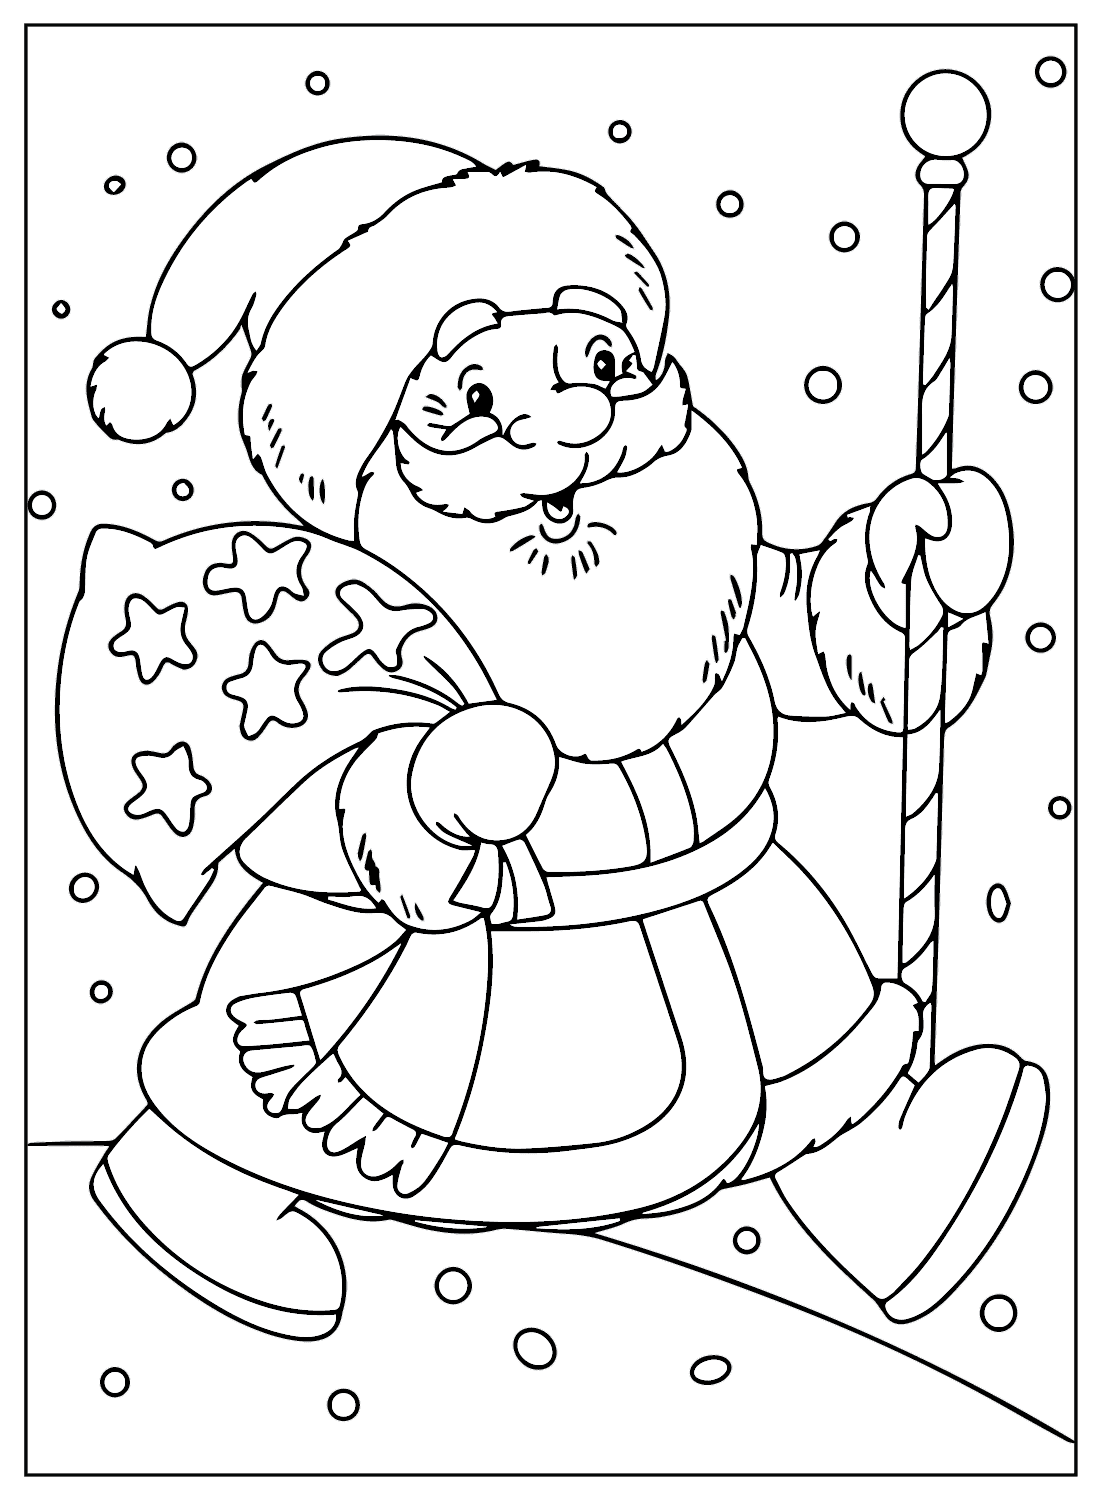 Раскраска Санта-Клауса с изображениями Санта-Клауса